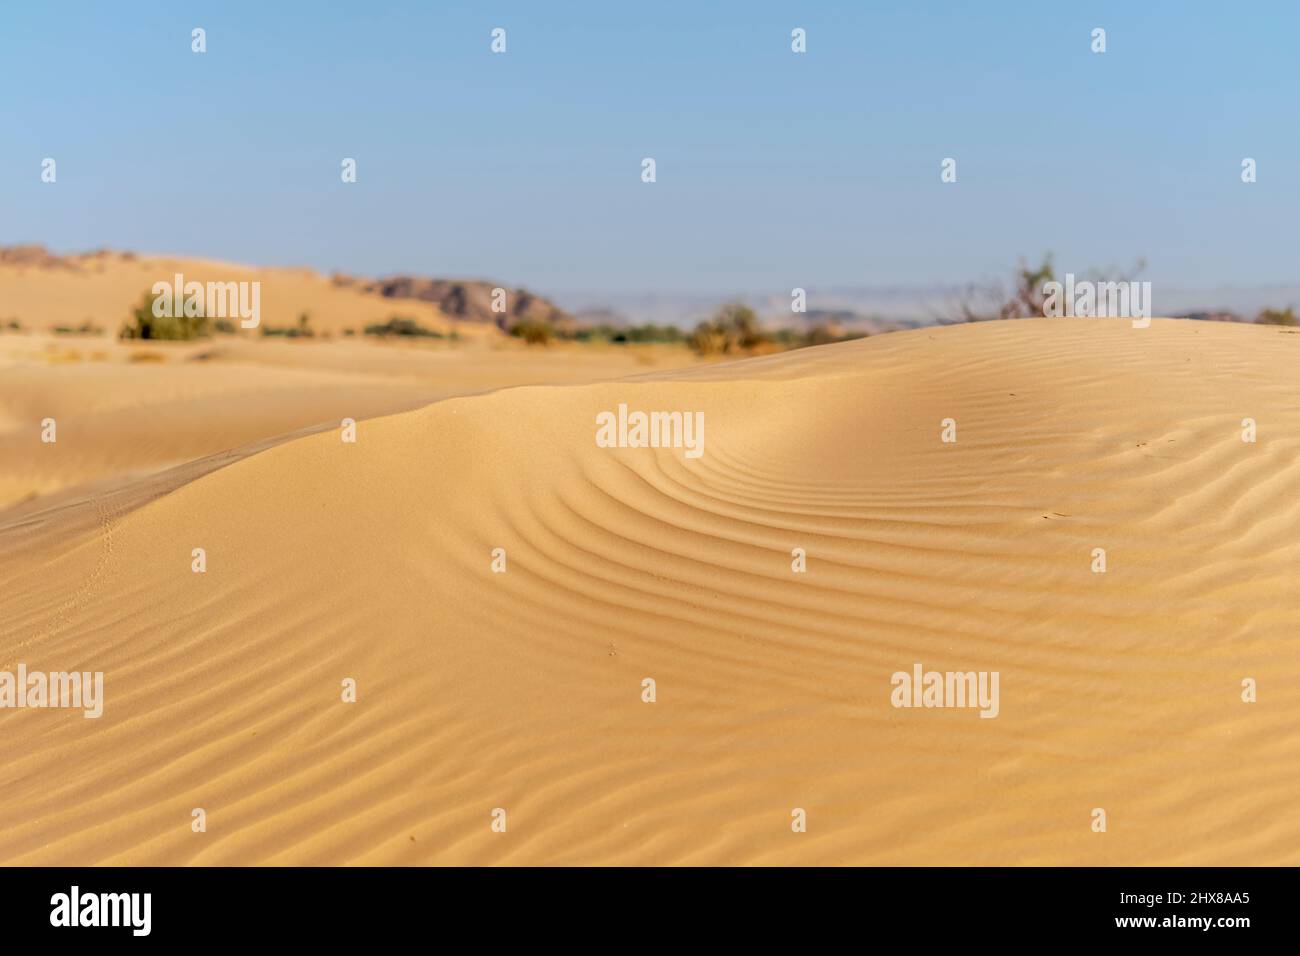 Dune du désert du Sahara d'Algérie. Magnifique couleur de sable avec des ondulations incroyables formes et contrastes. Ciel bleu flou et herbes séchées. Banque D'Images